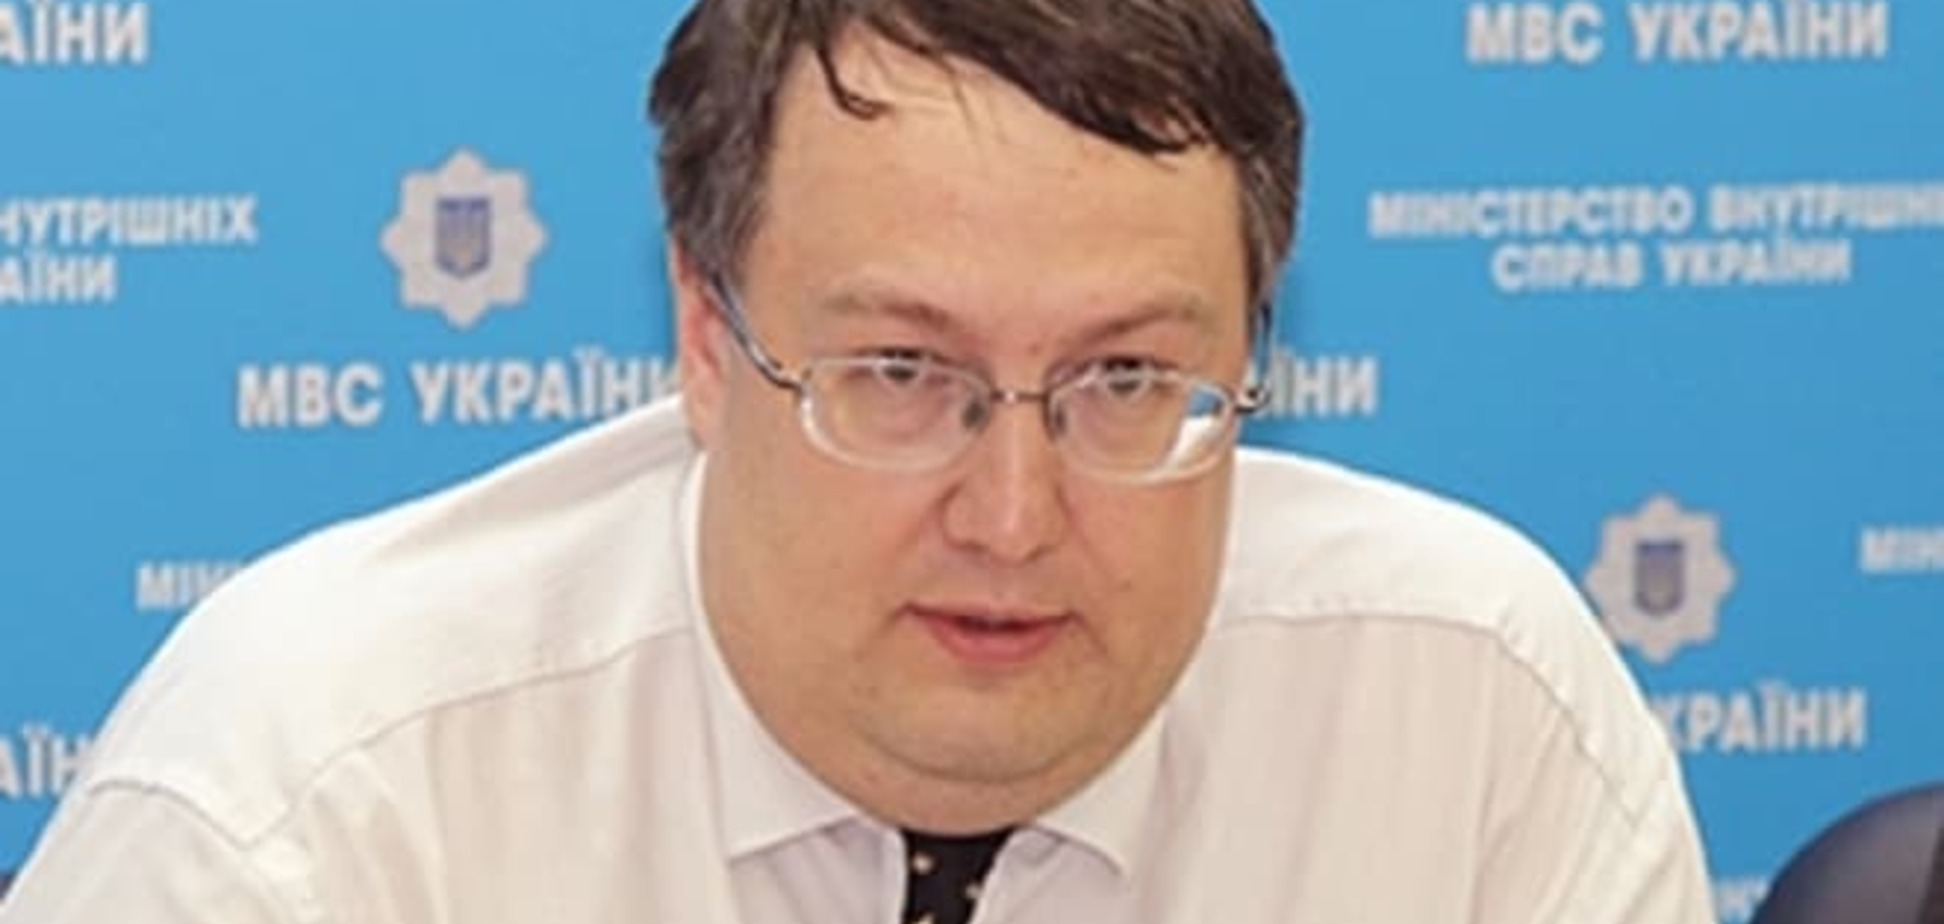 Геращенко потребовал увольнения главы РГА, нахамившего полицейскому: видеофакт